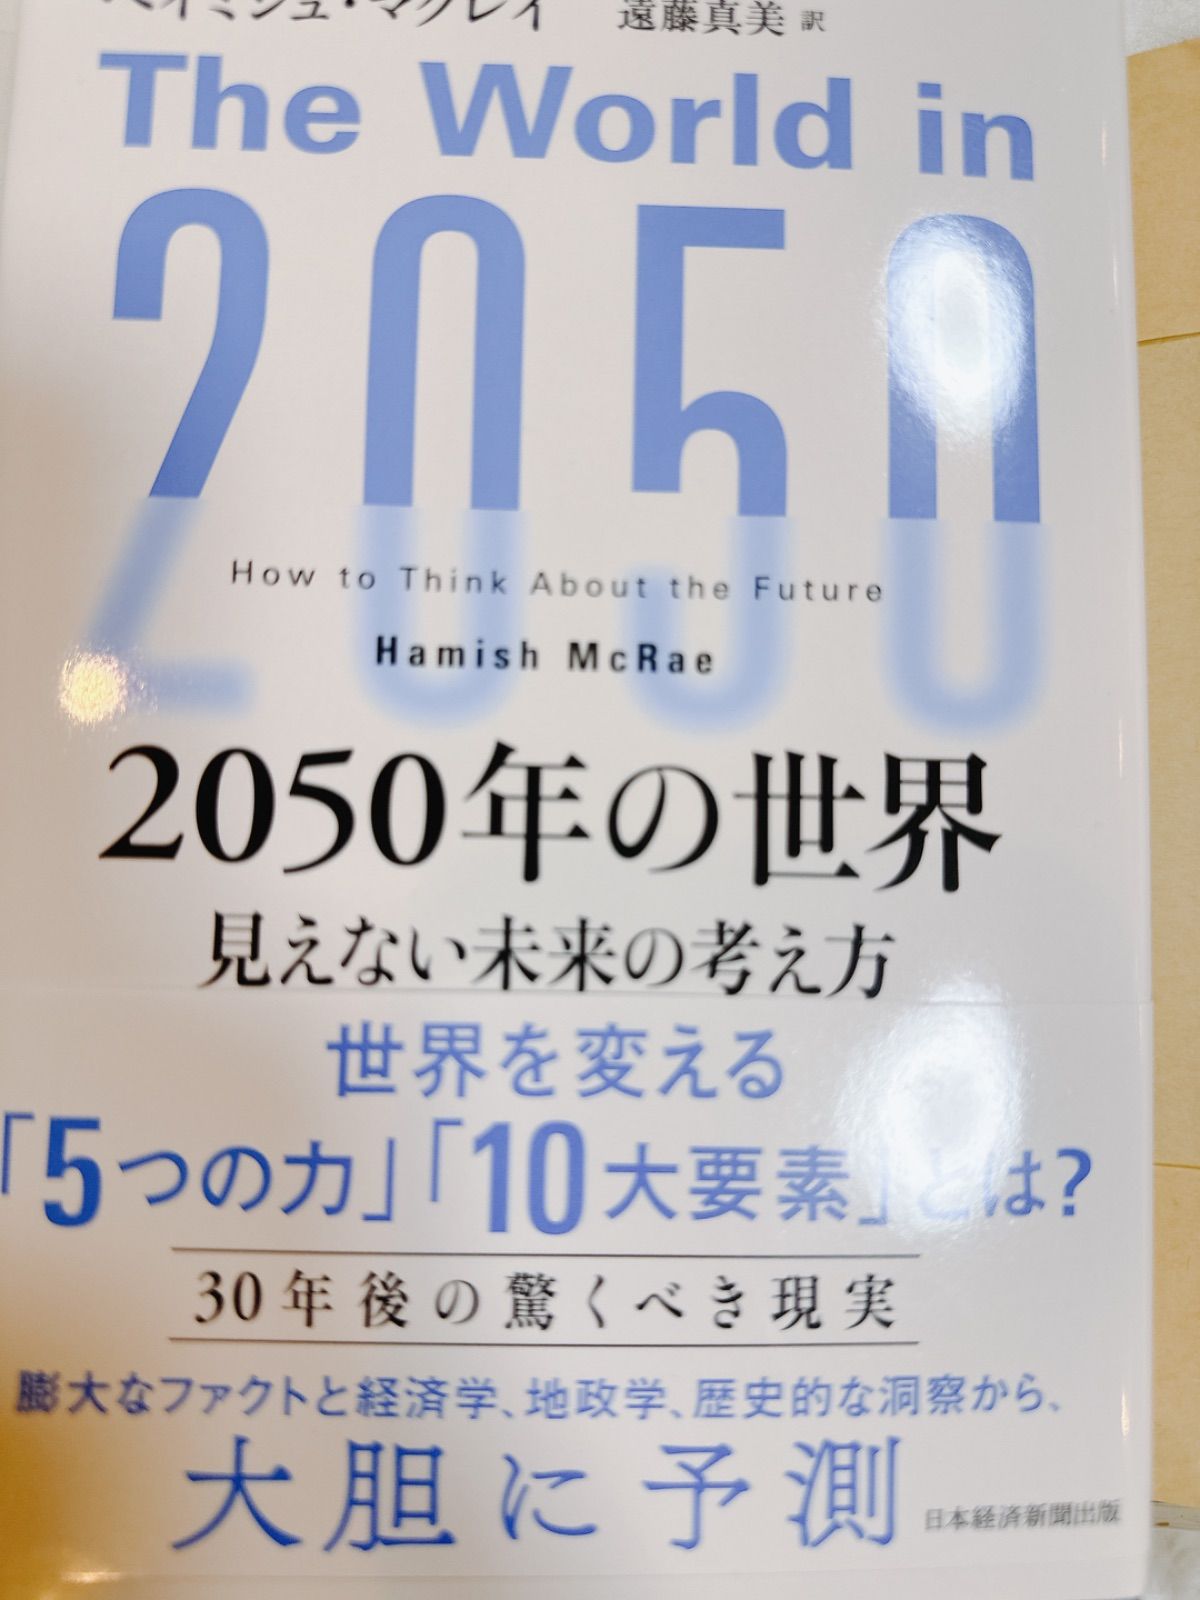 2050年の世界 : 見えない未来の考え方 - メルカリ